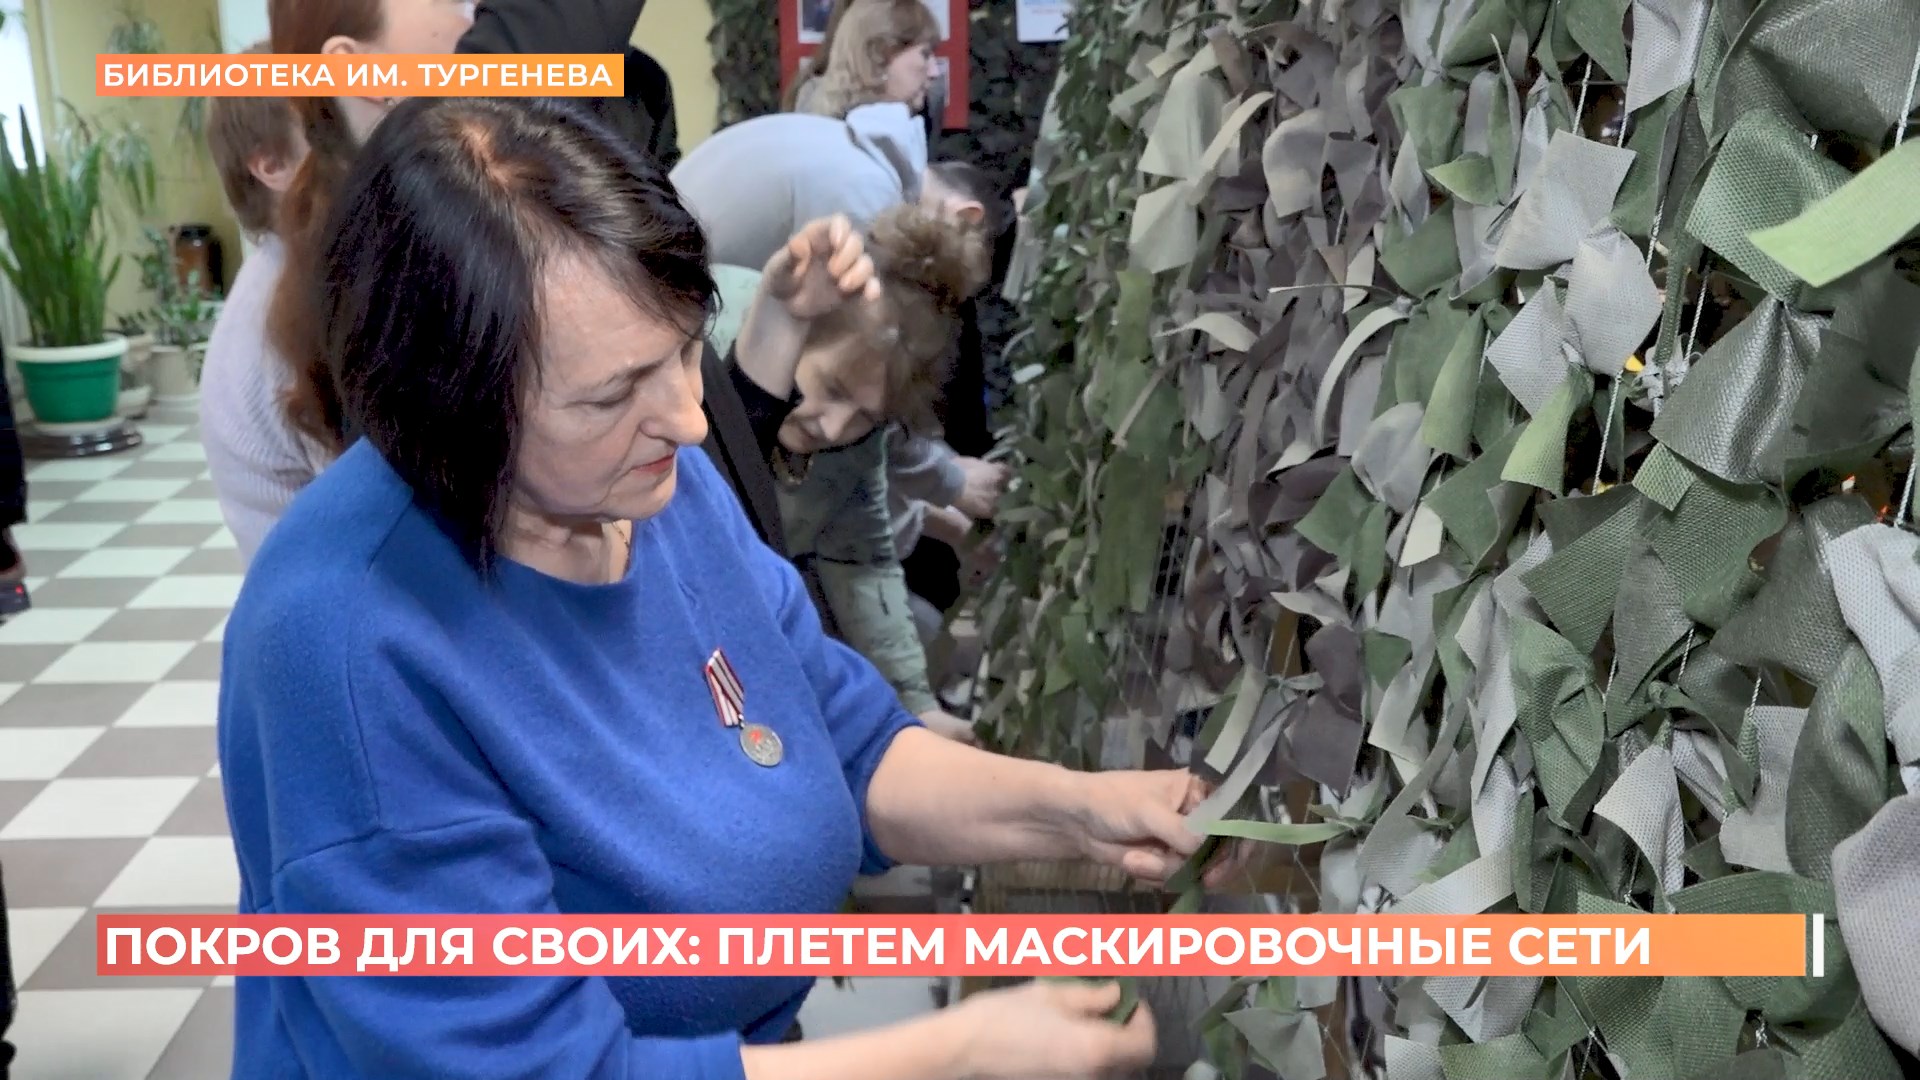 В библиотеке имени Тургенева  открыли  мастерскую по плетению маскировочных сетей